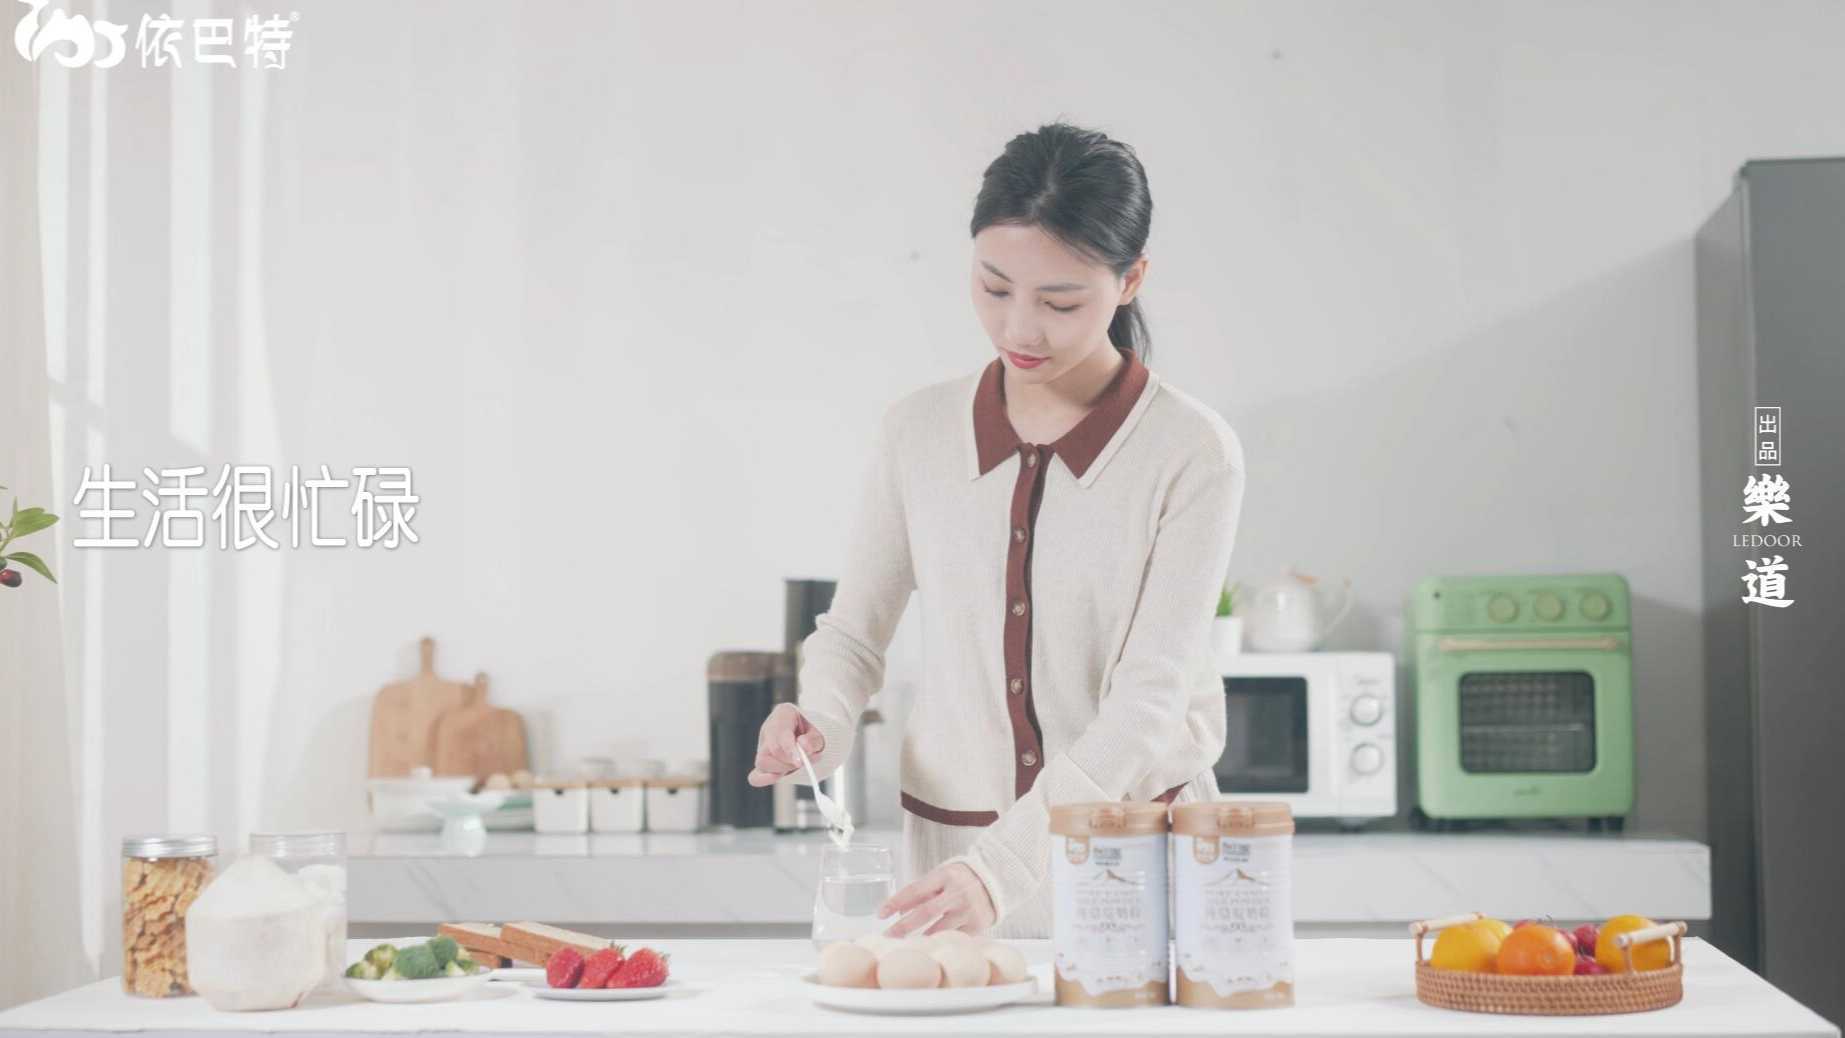 依巴特纯驼奶产品宣传视频 I 乐道摄影